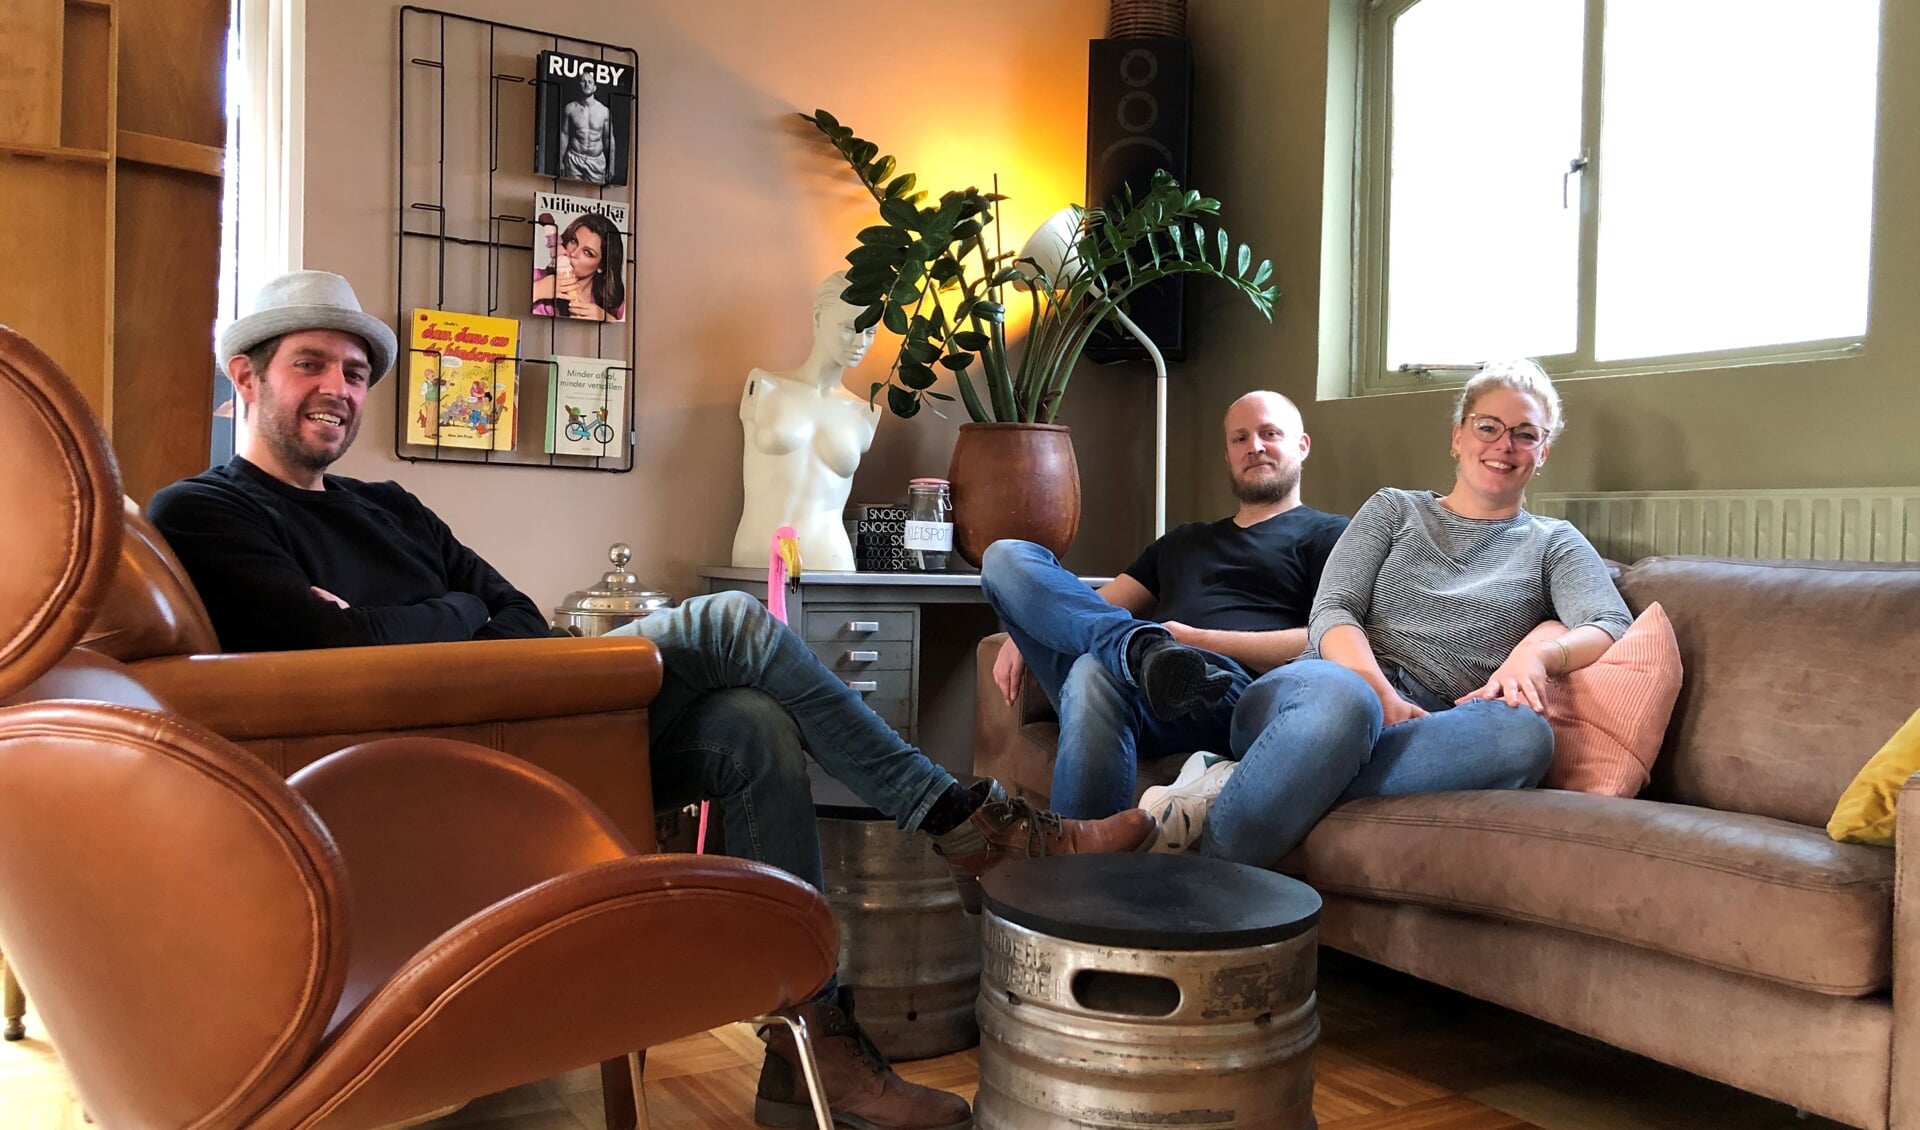 Sjors Lars, Ivo en Lara in de gezellige huiskamersfeer van Rozemeijer aan de Jaagweg. 